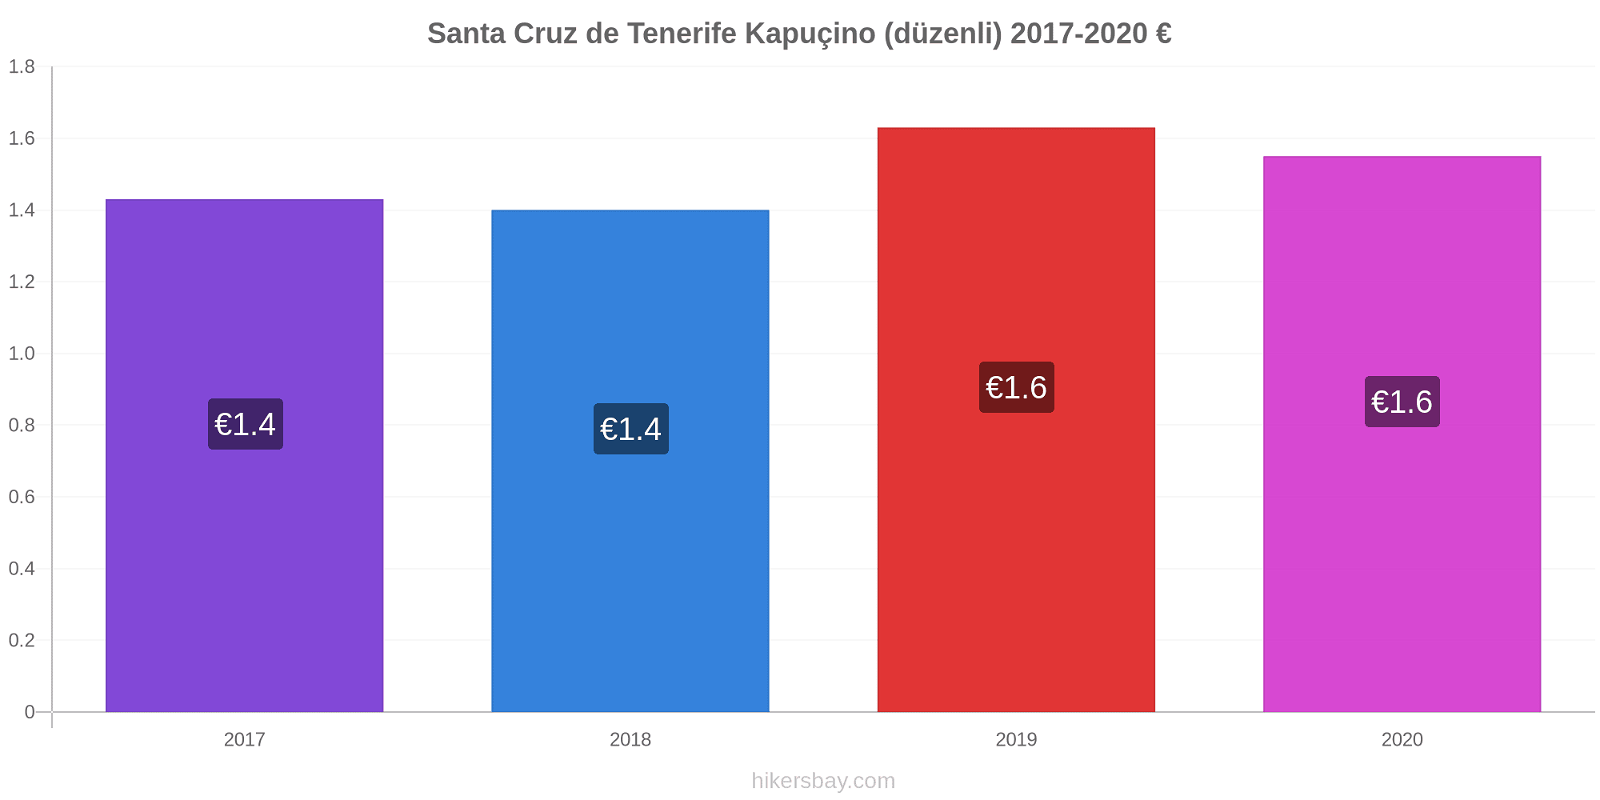 Santa Cruz de Tenerife fiyat değişiklikleri Kapuçino (düzenli) hikersbay.com